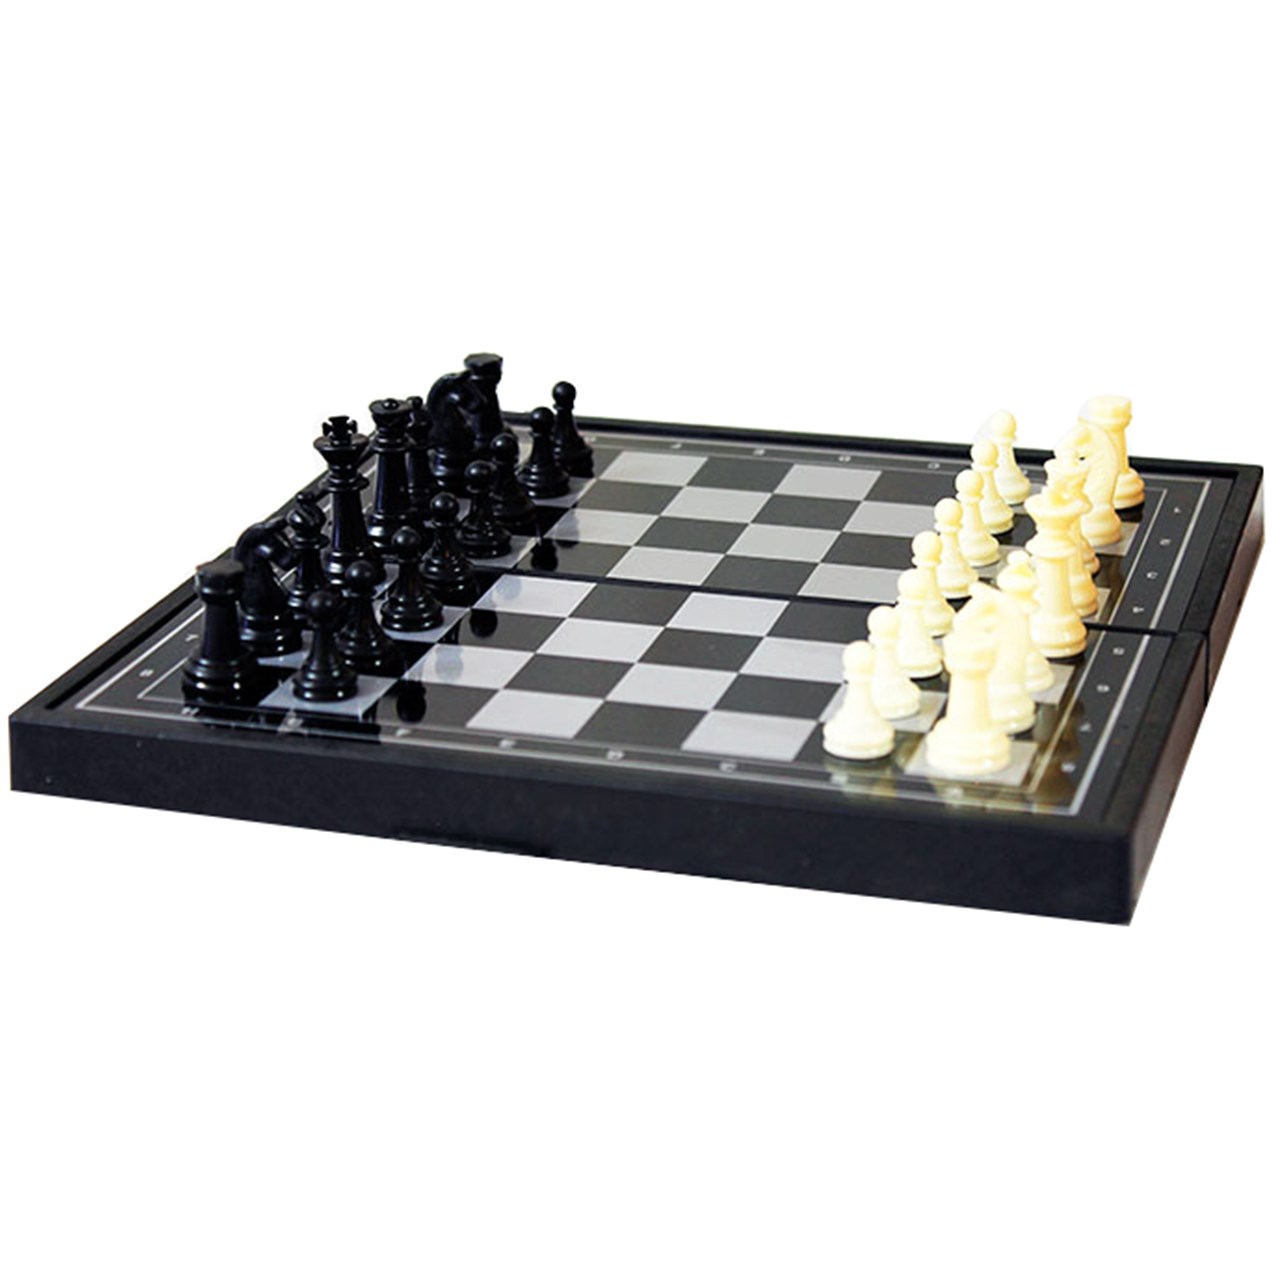 شطرنج کوچک آهنربایی مدل rdl2016